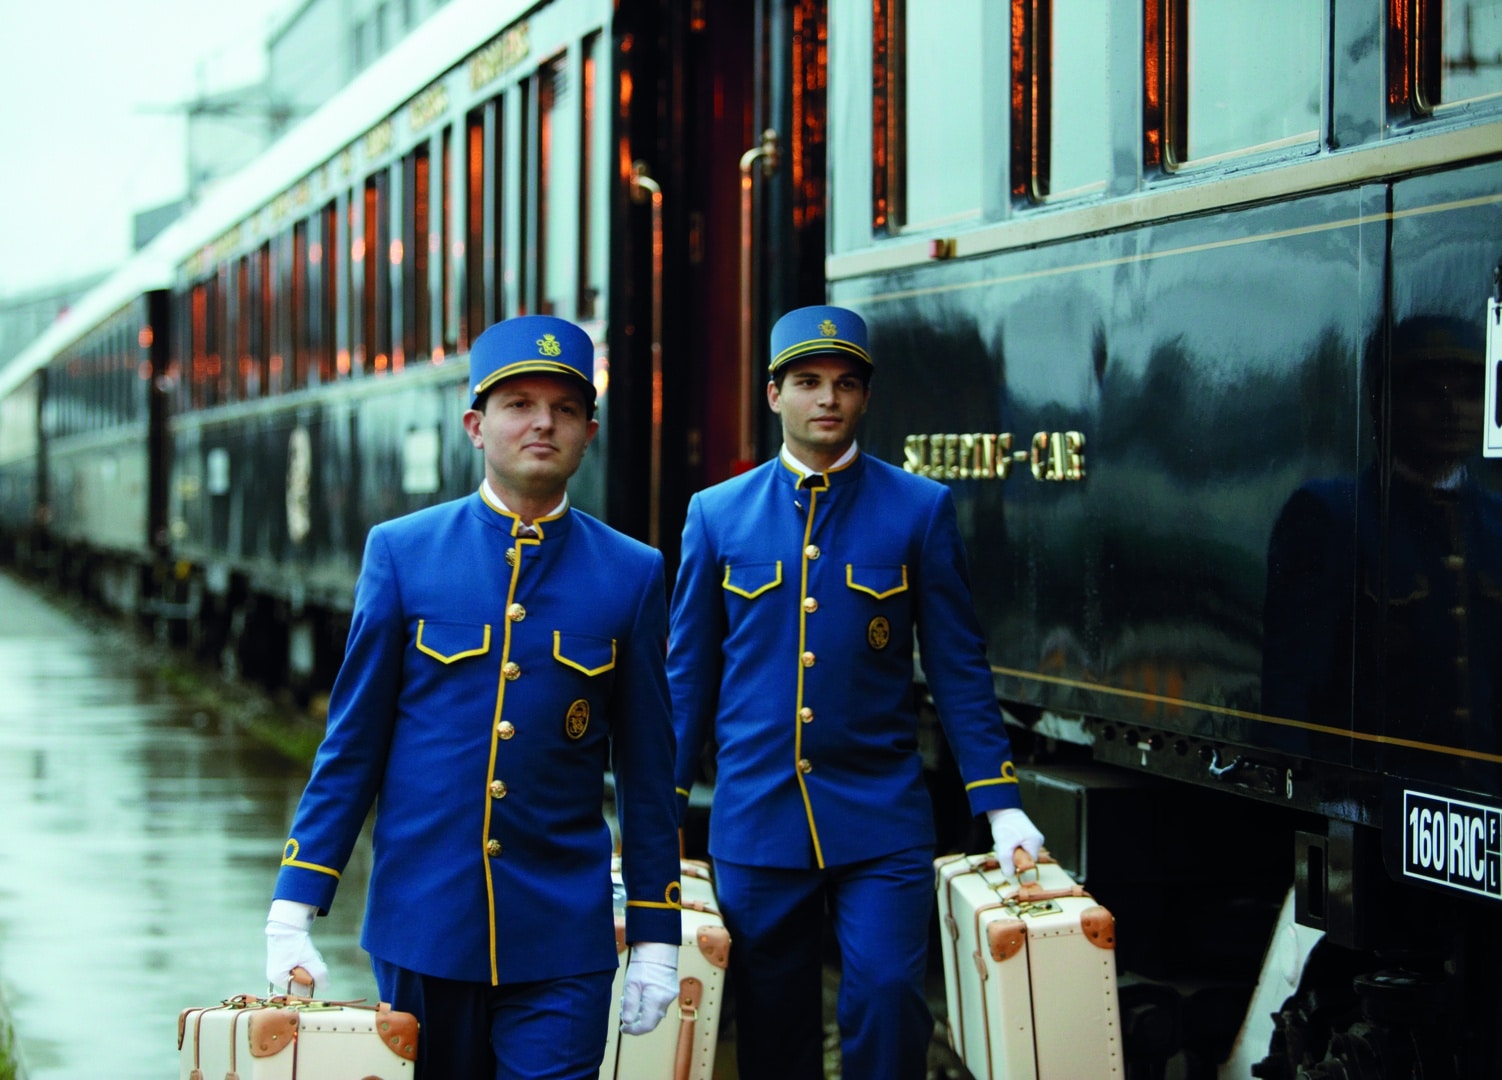 Venice Simplon Orient Express bagagistes personnels